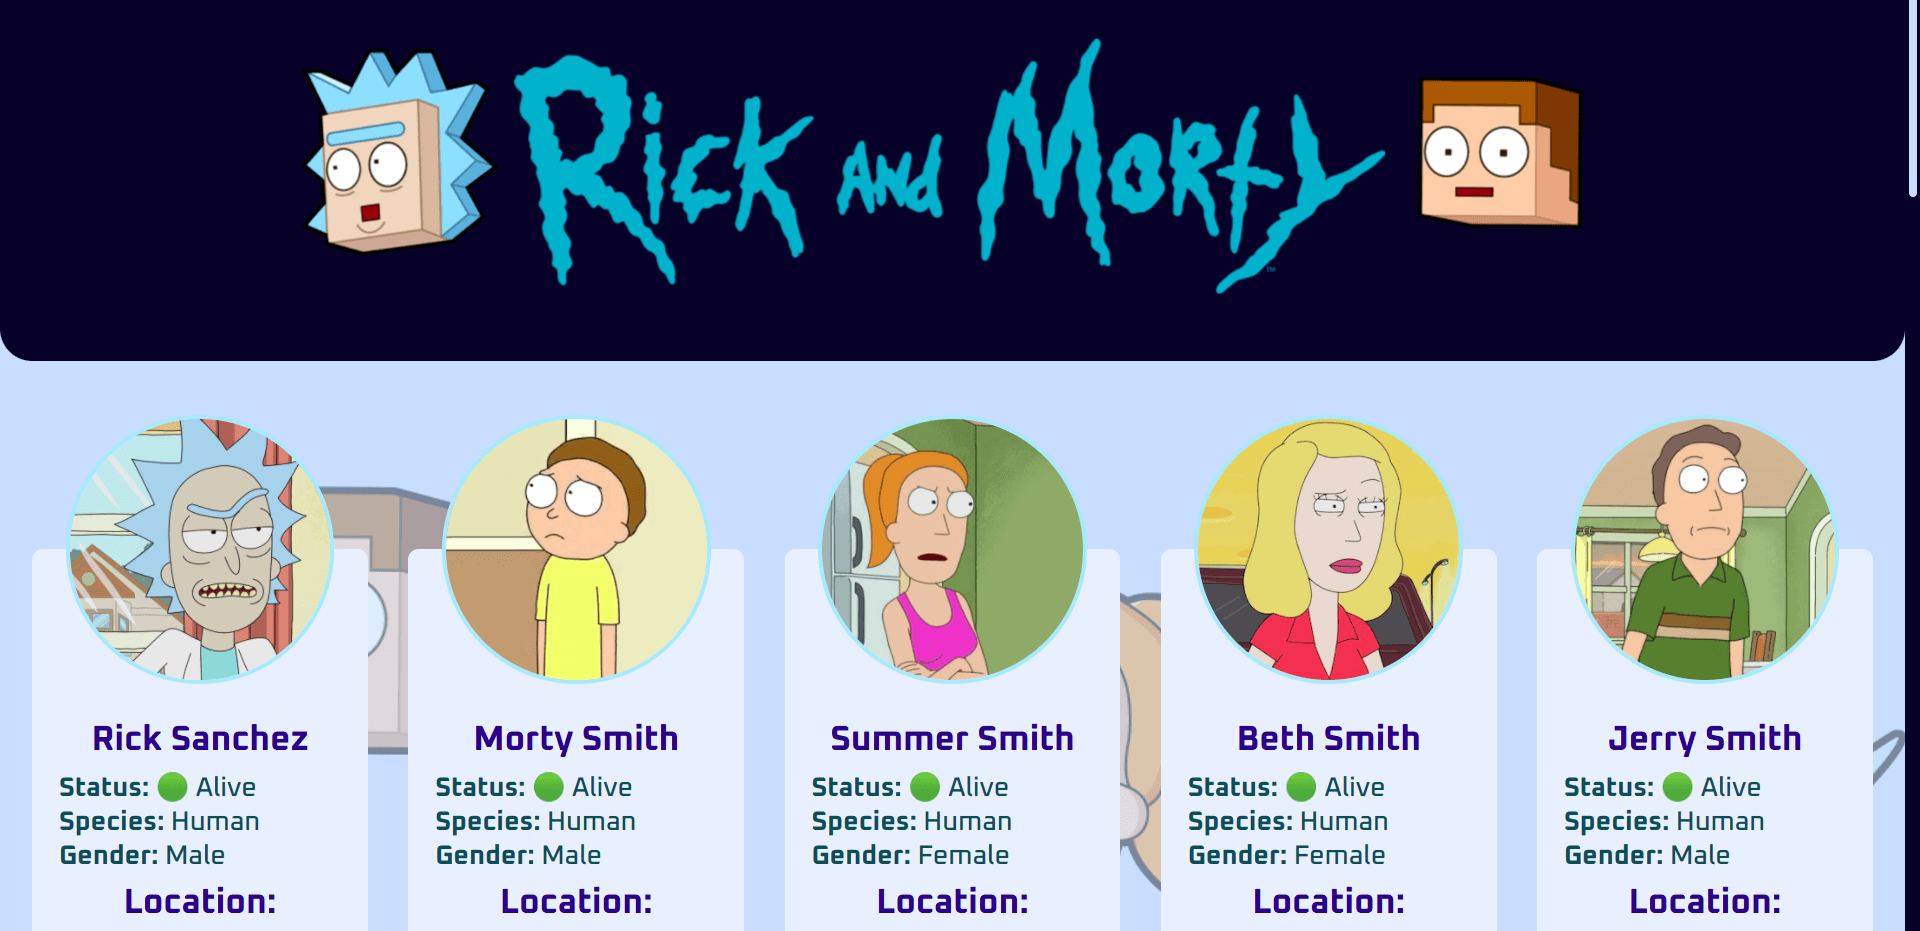 Rick and morty API